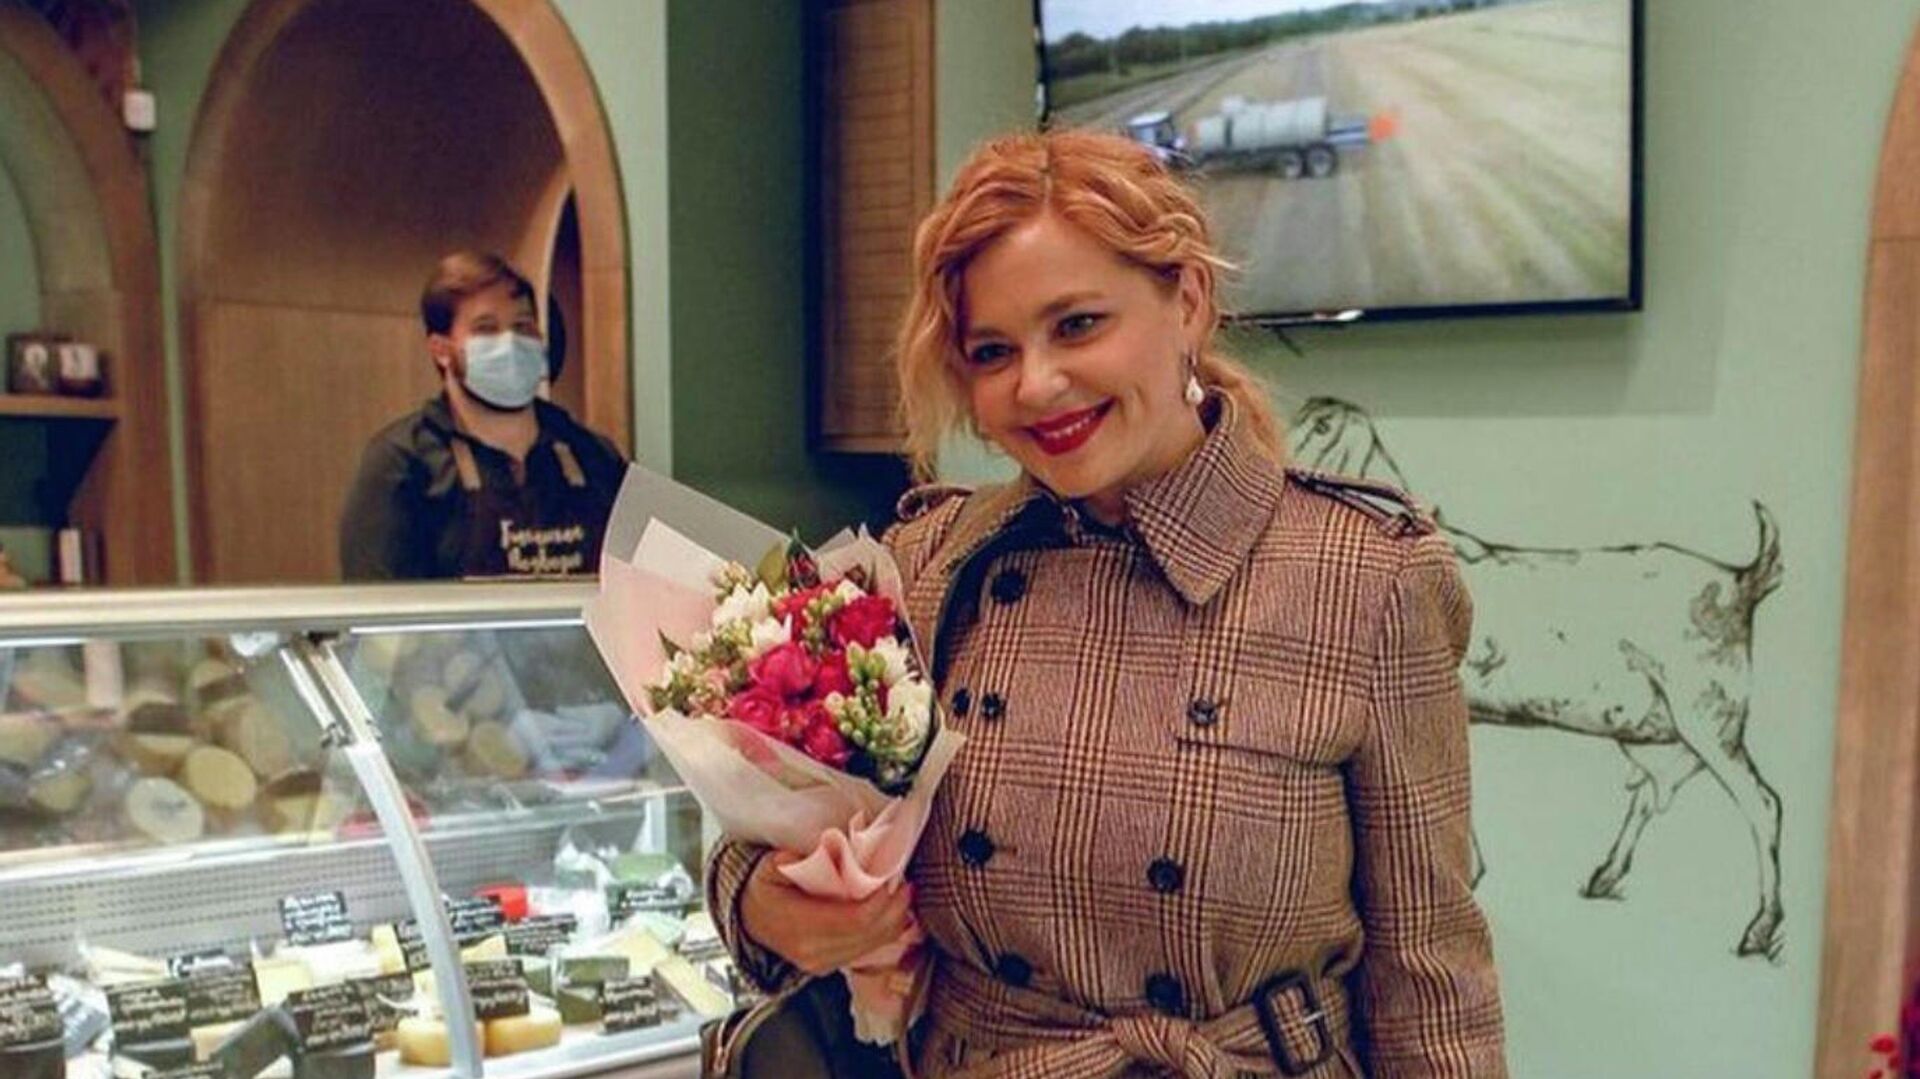 Фотография из Instagram-аккаунта актрисы Ирины Пеговой - РИА Новости, 1920, 24.02.2021